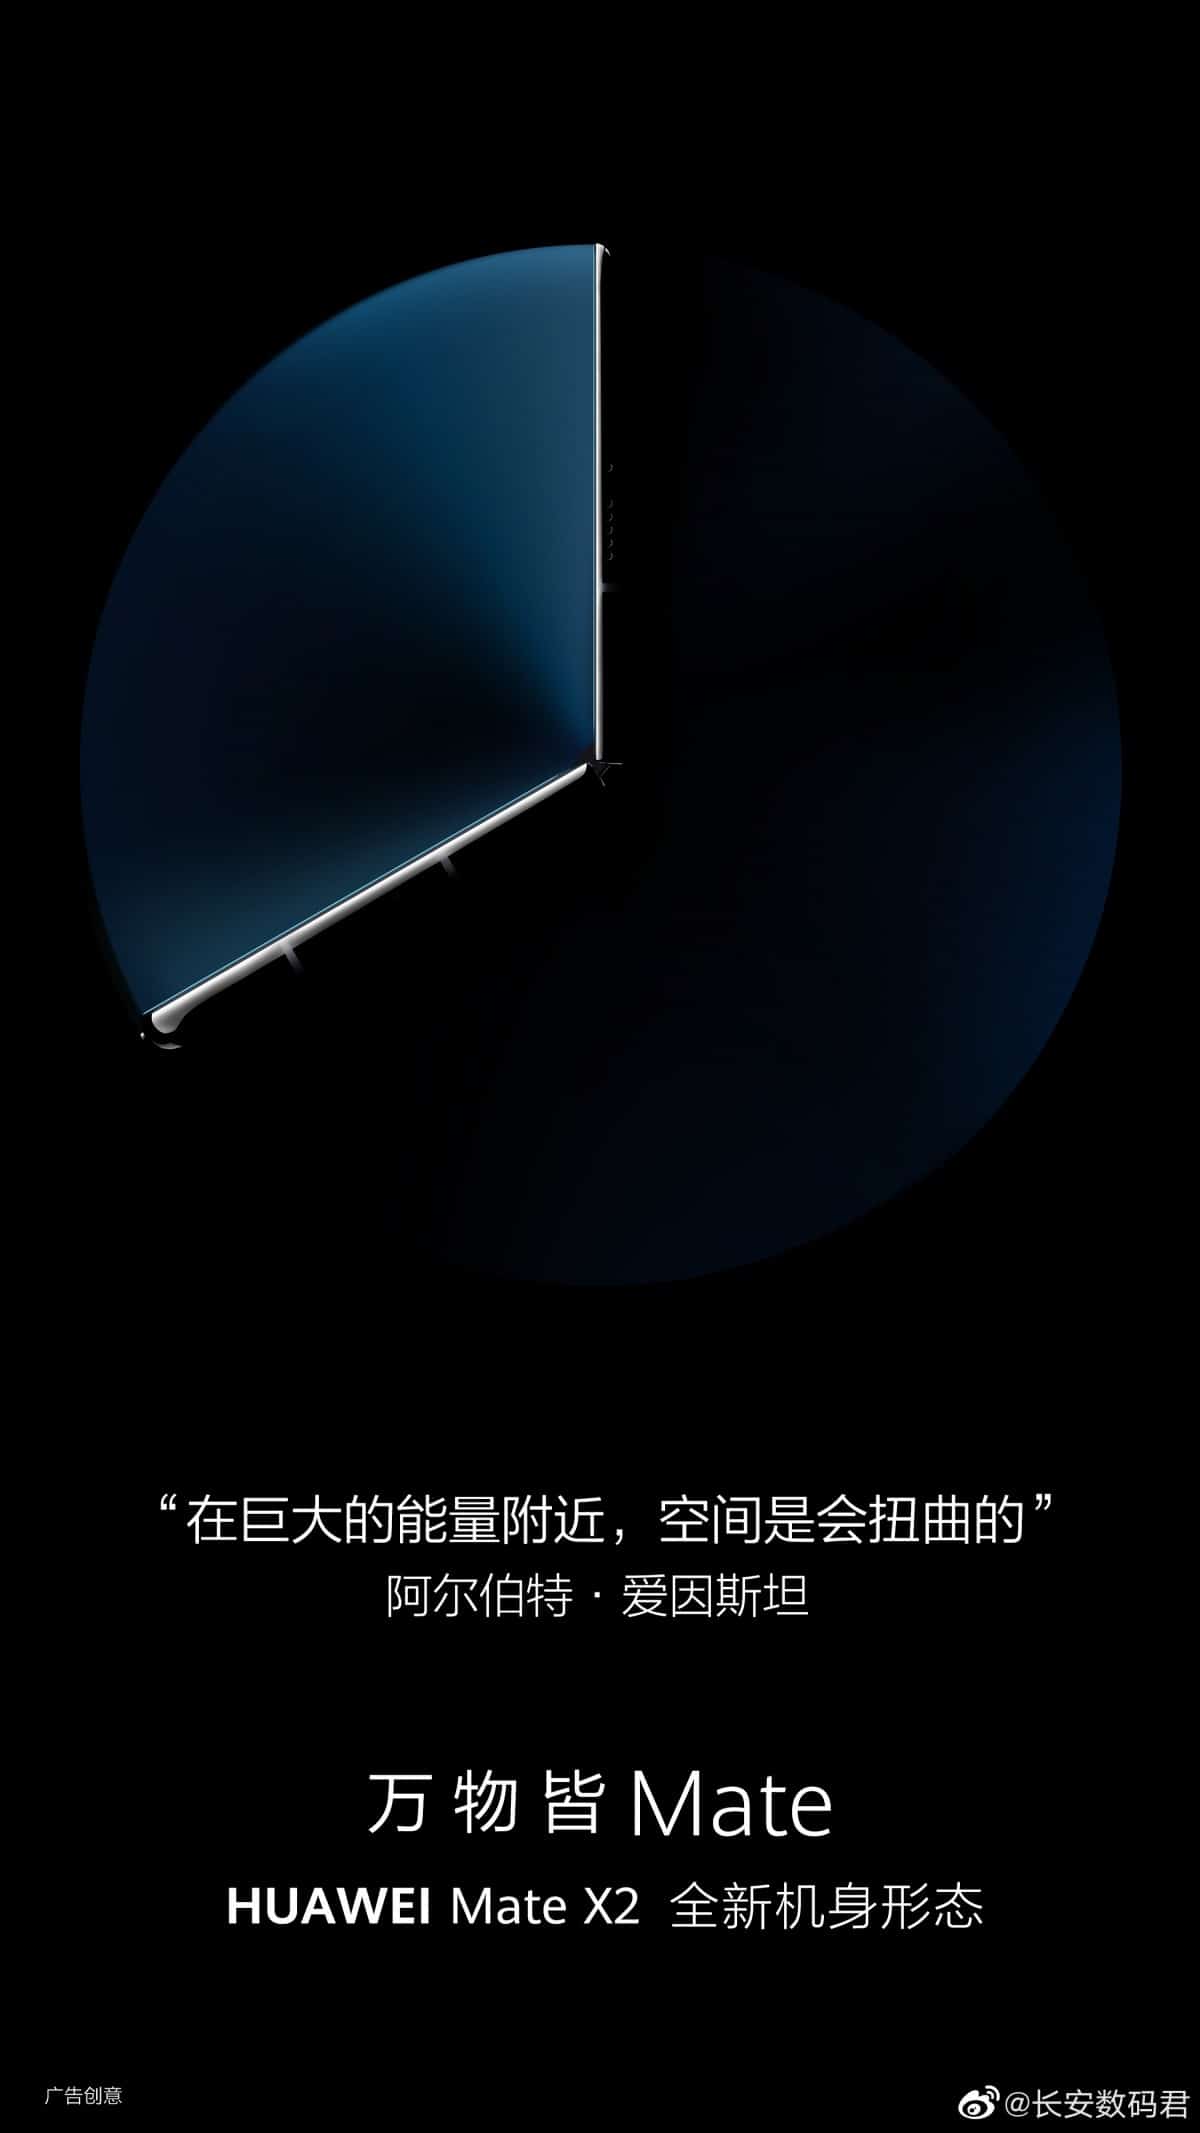 Ảnh mới về Huawei Mate X2 tiết lộ về khả năng gập vào trong